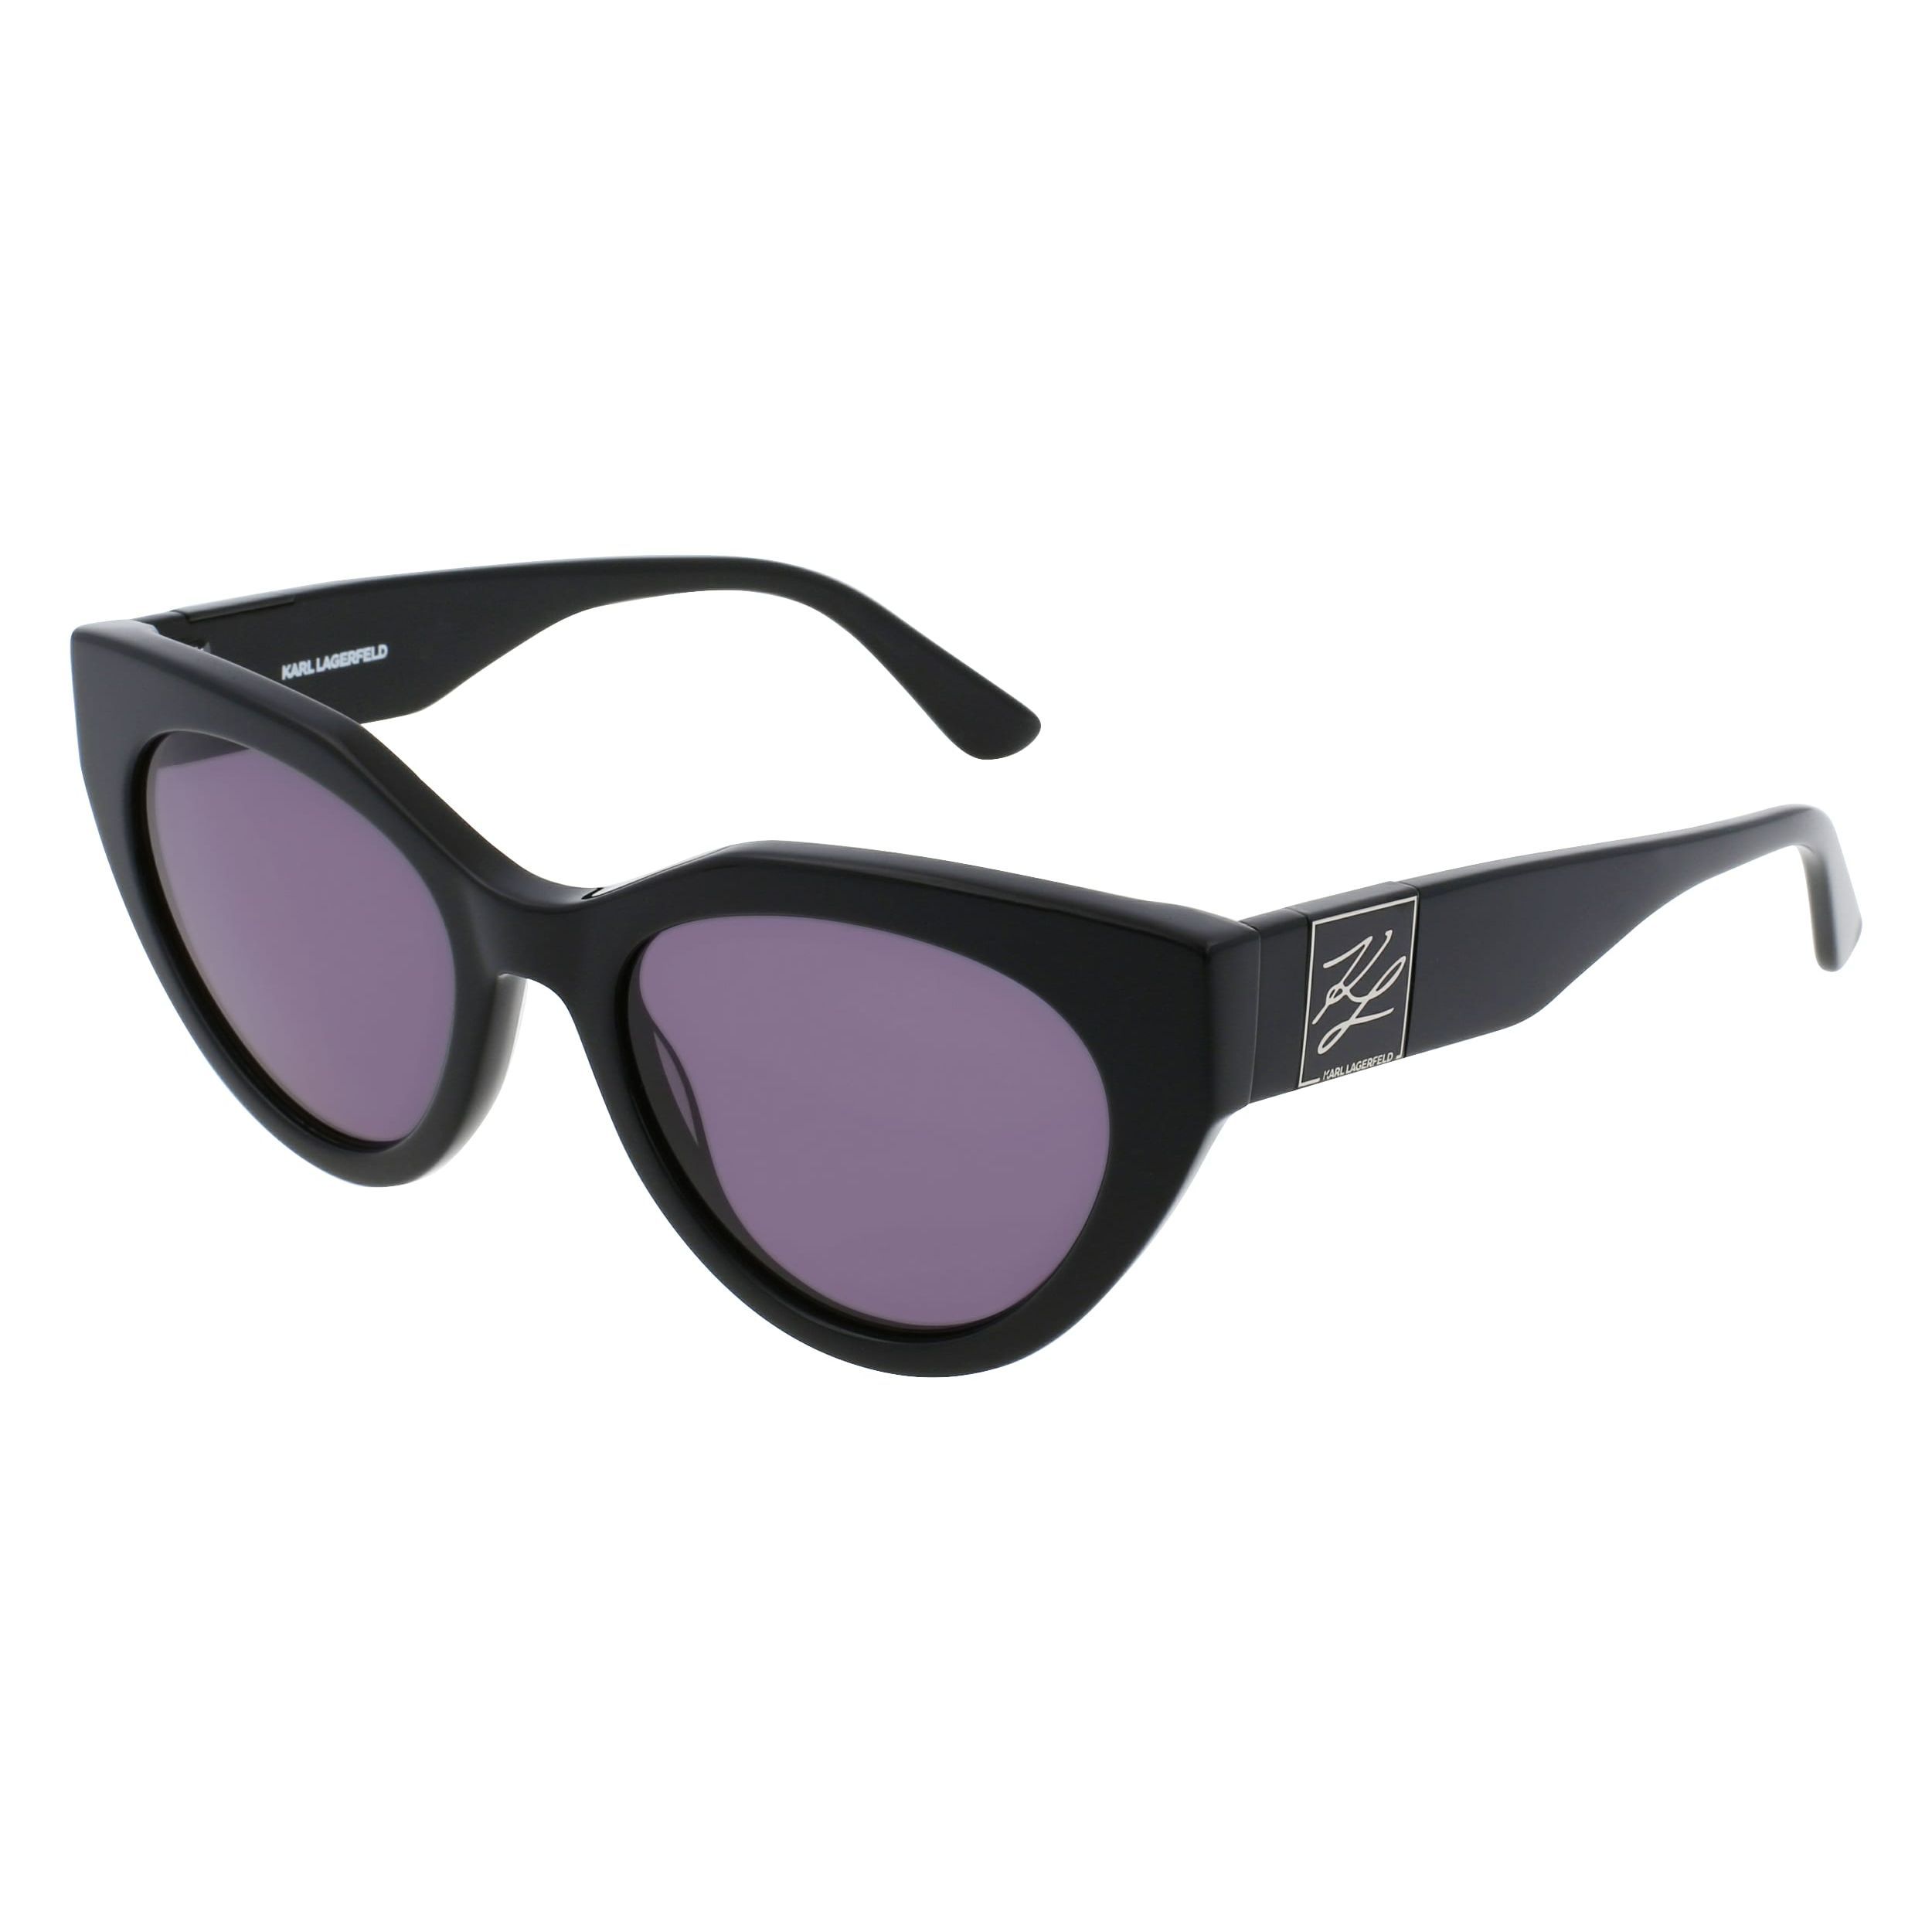 KL6047S Cat Eye Sunglasses 1 - size 52